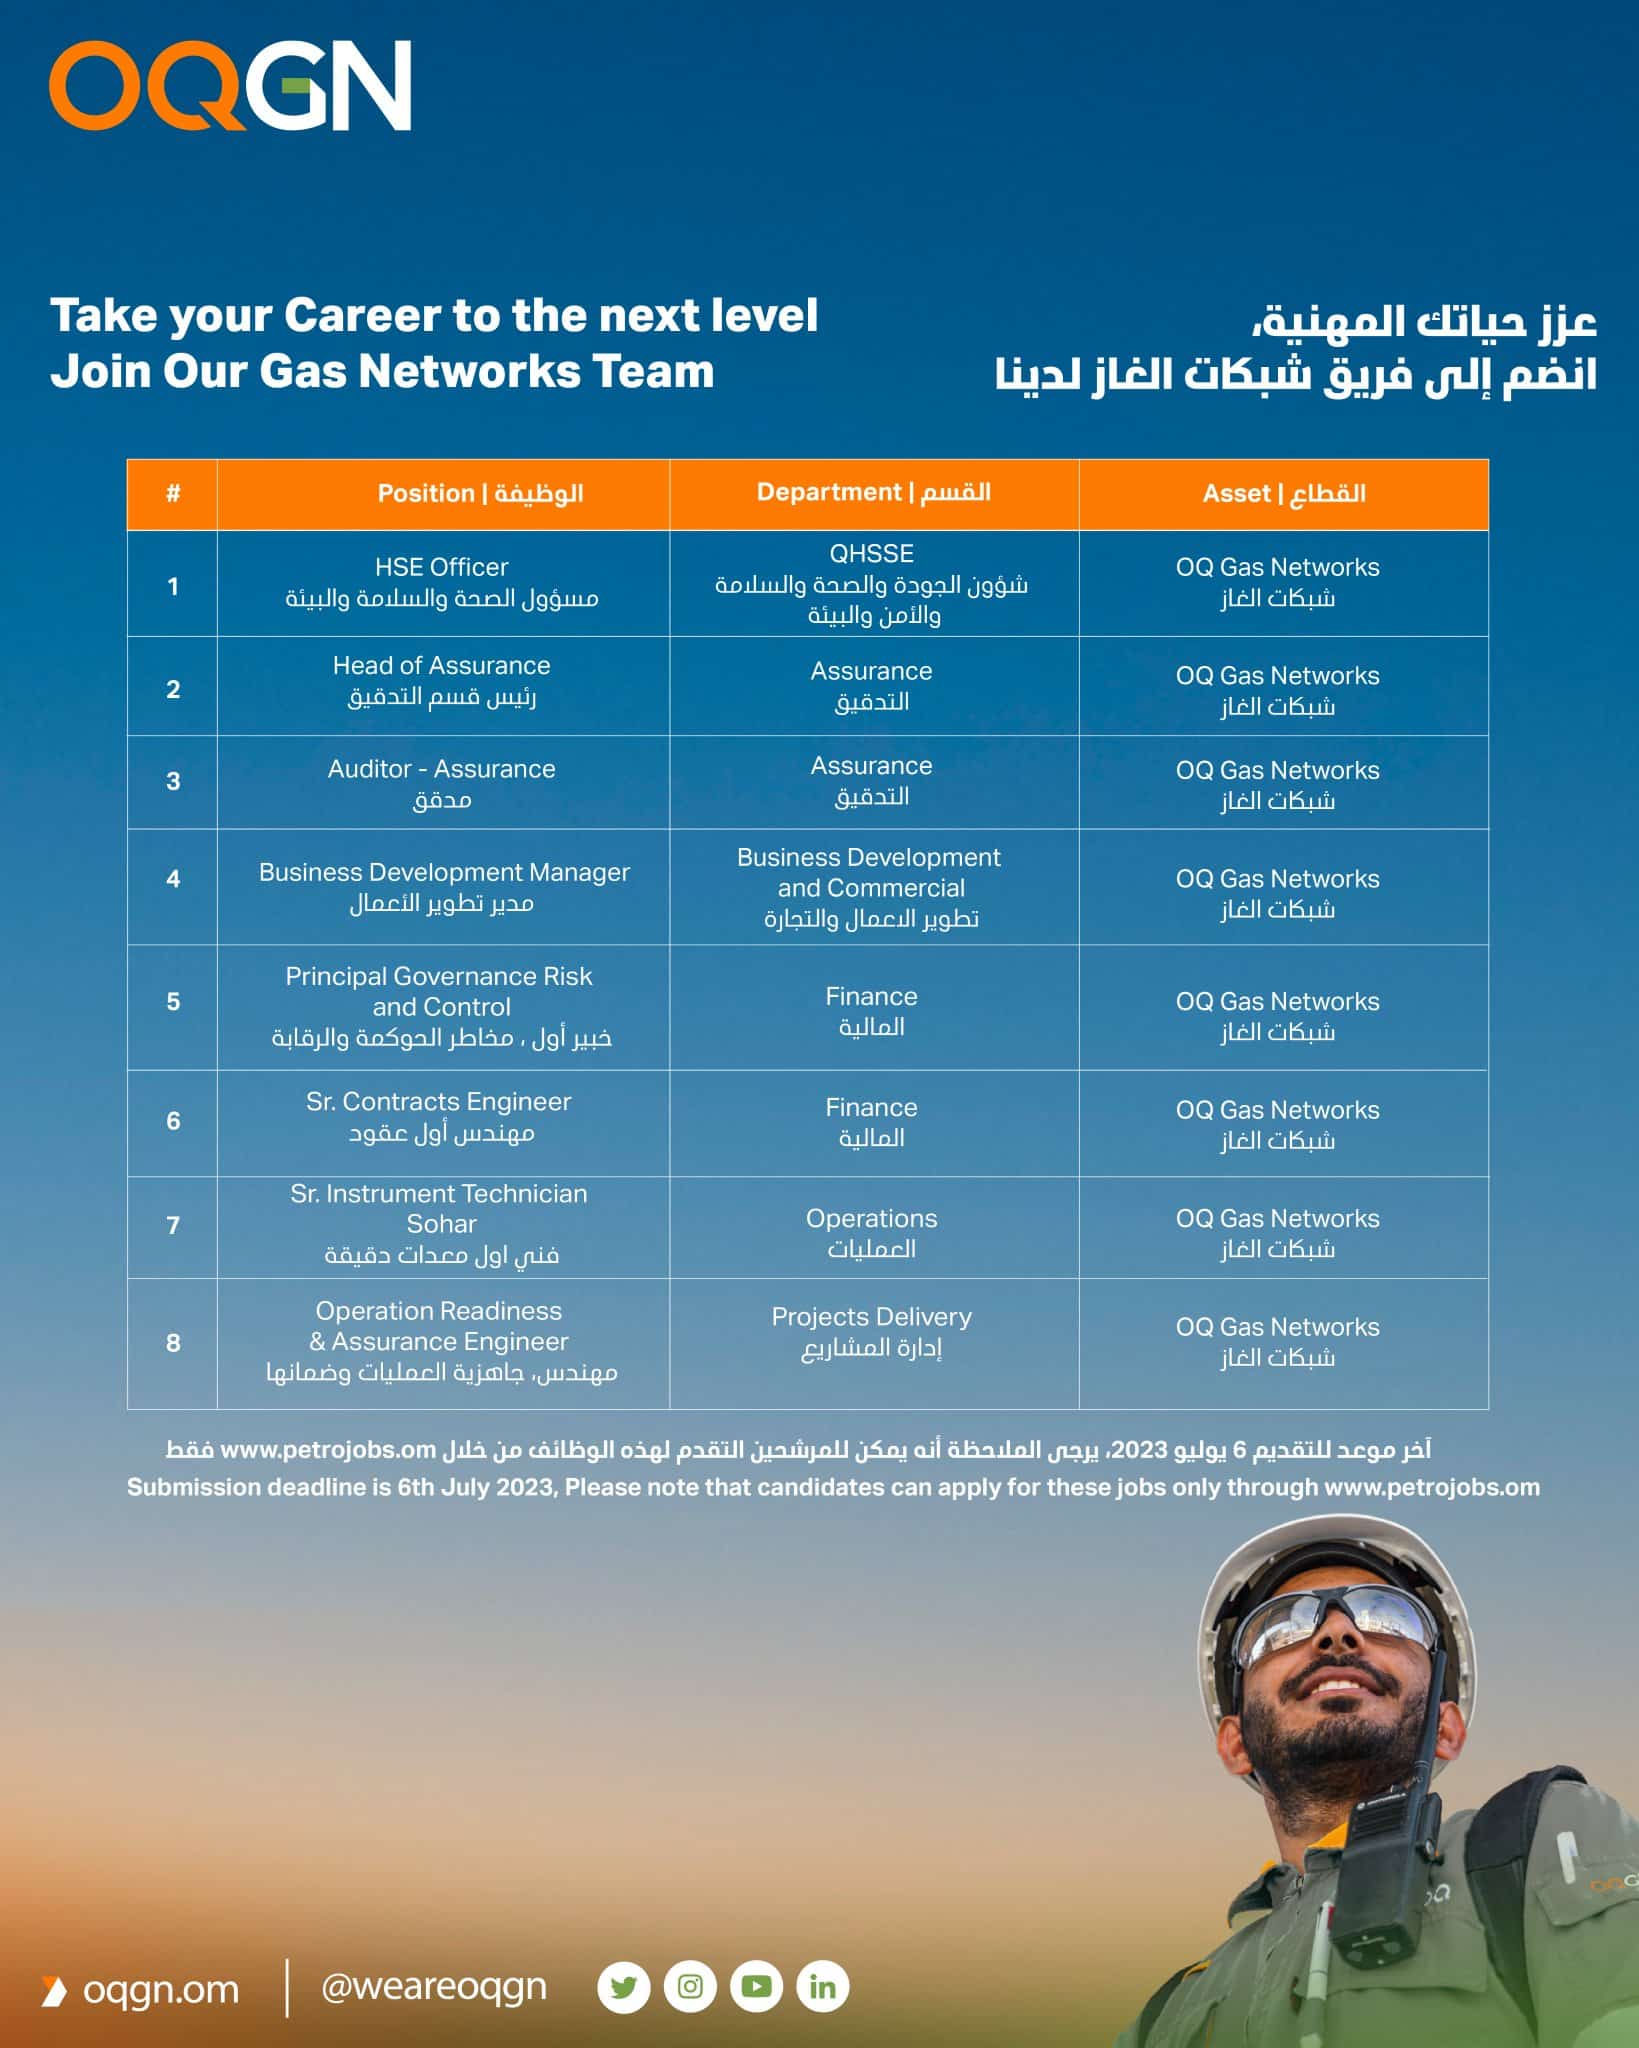 شركة أوكيو لشبكات الغاز تعلن عن 15 وظيفة شاغرة في سلطنة عمان برواتب ومزايا عالية لجميع الجنسيات